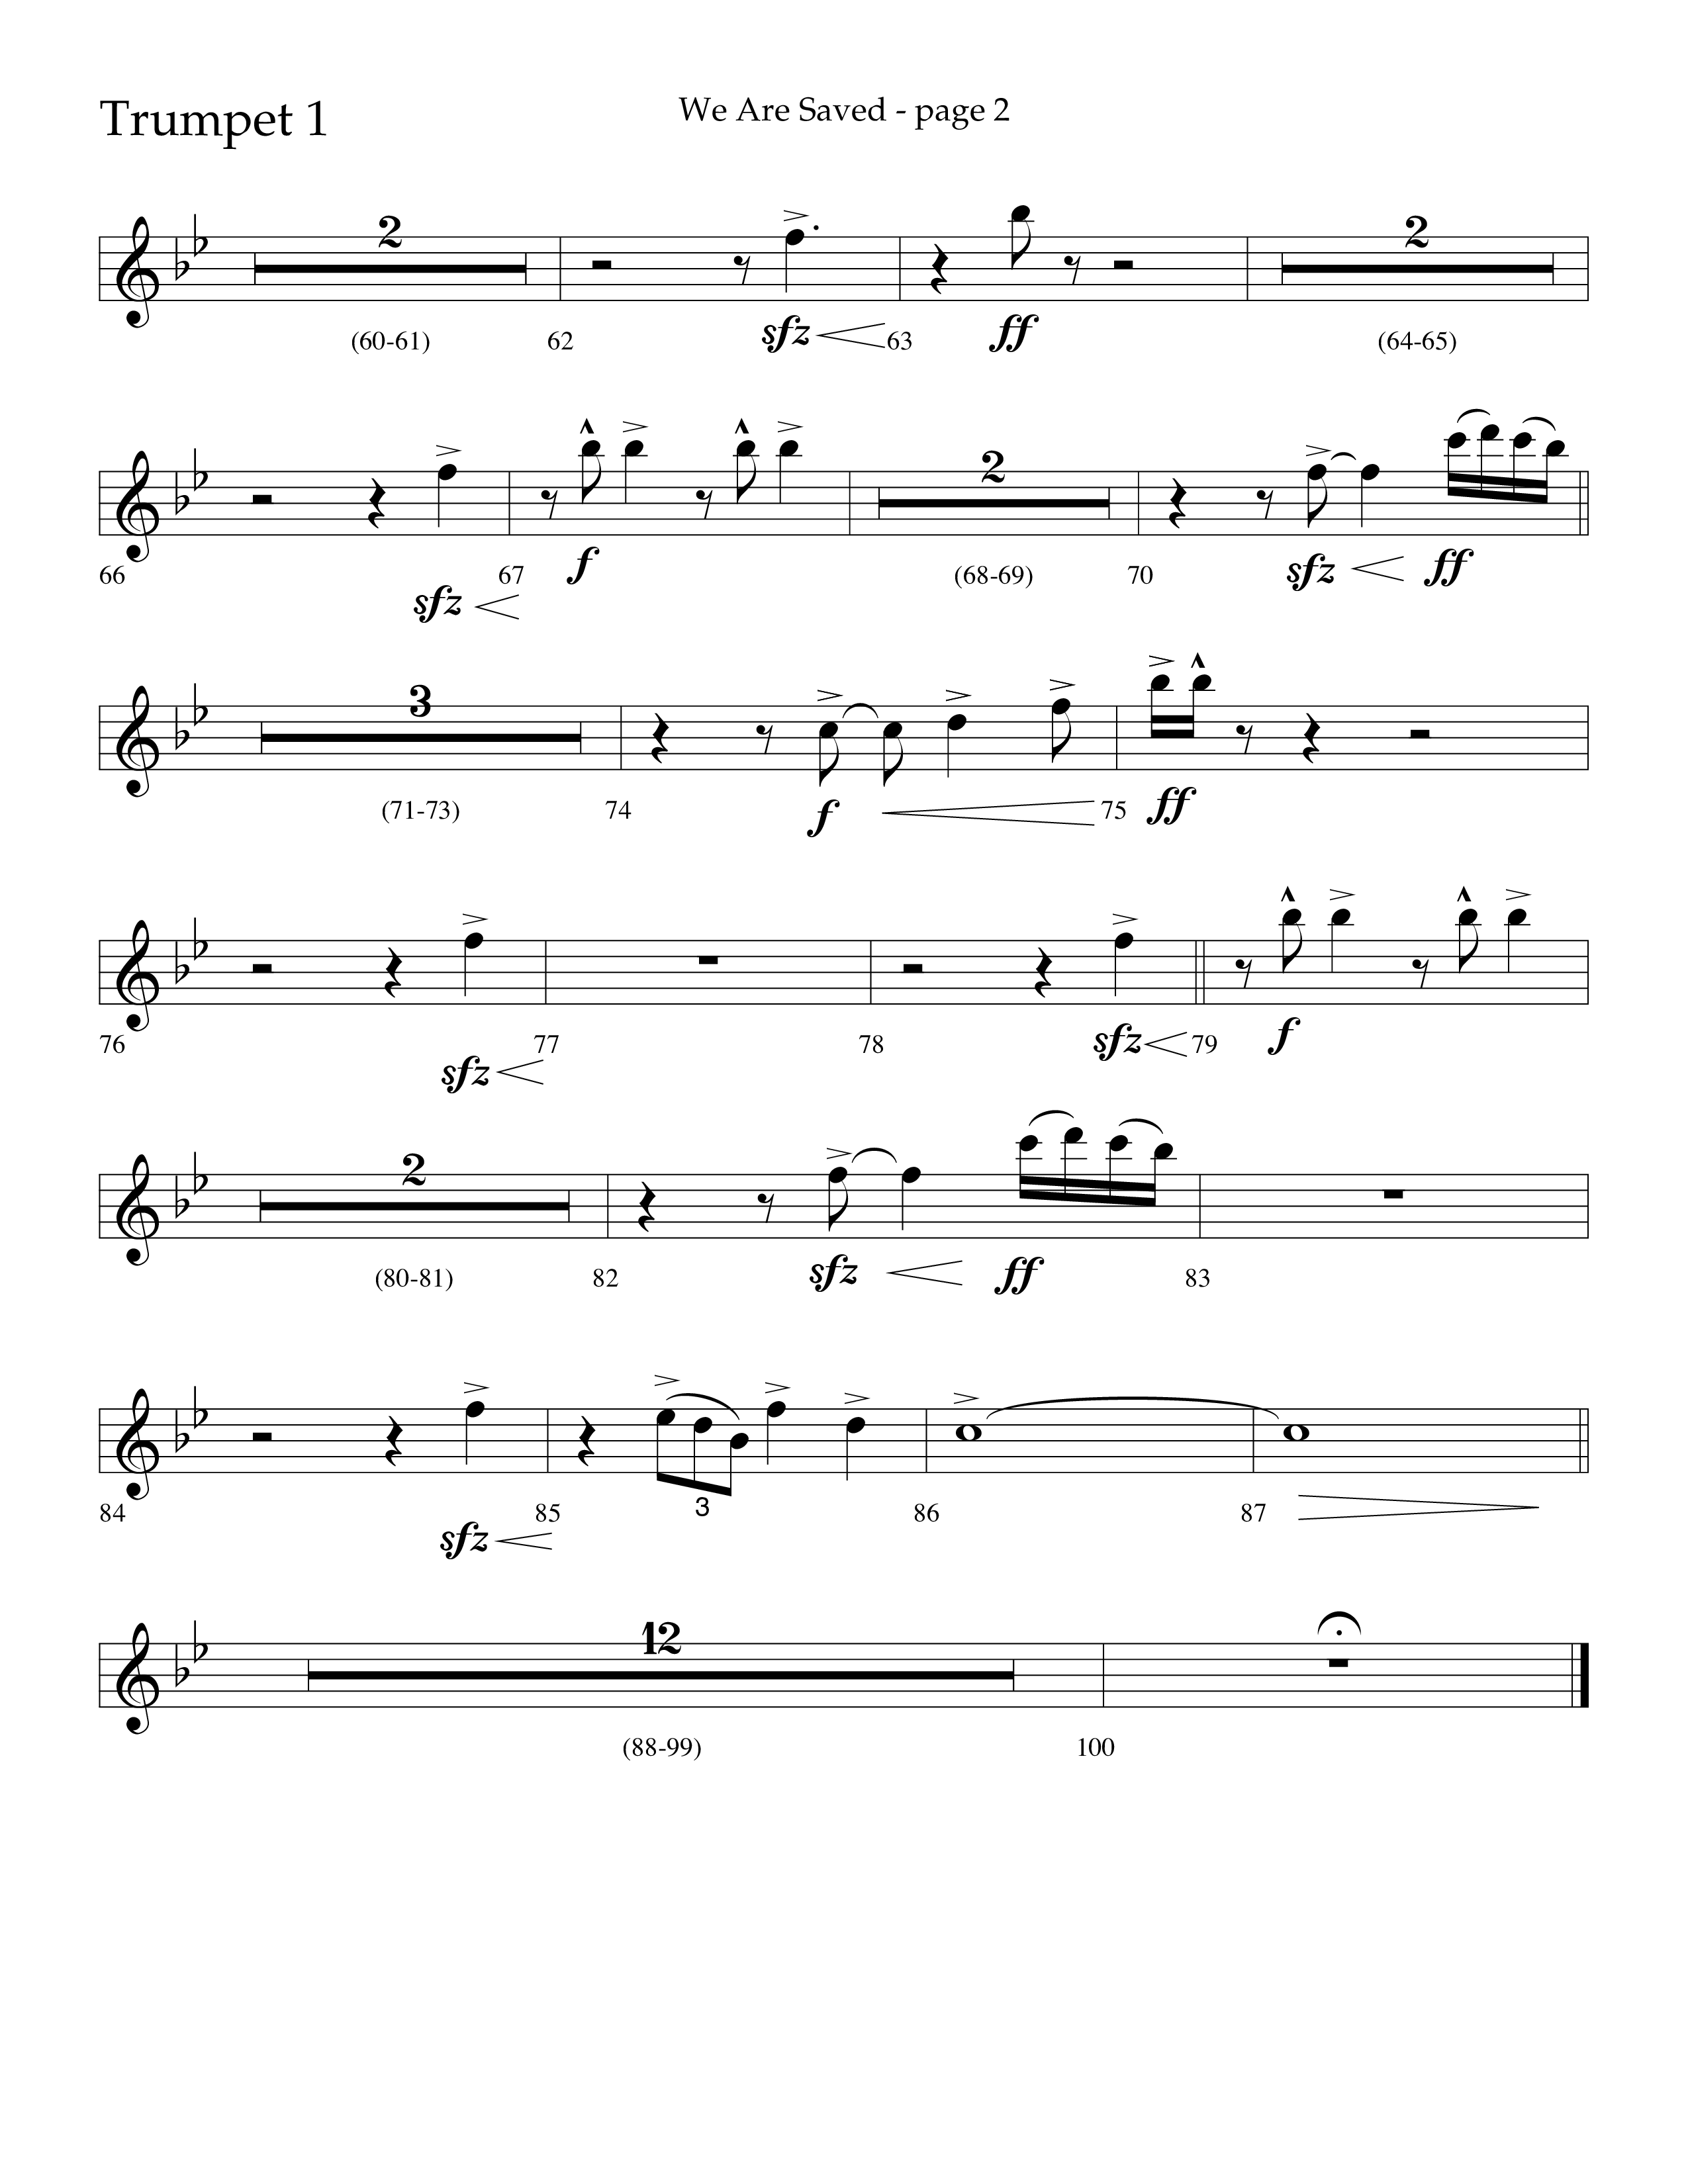 We Are Saved (Choral Anthem SATB) Trumpet 1 (Lifeway Choral / Arr. Cliff Duren)